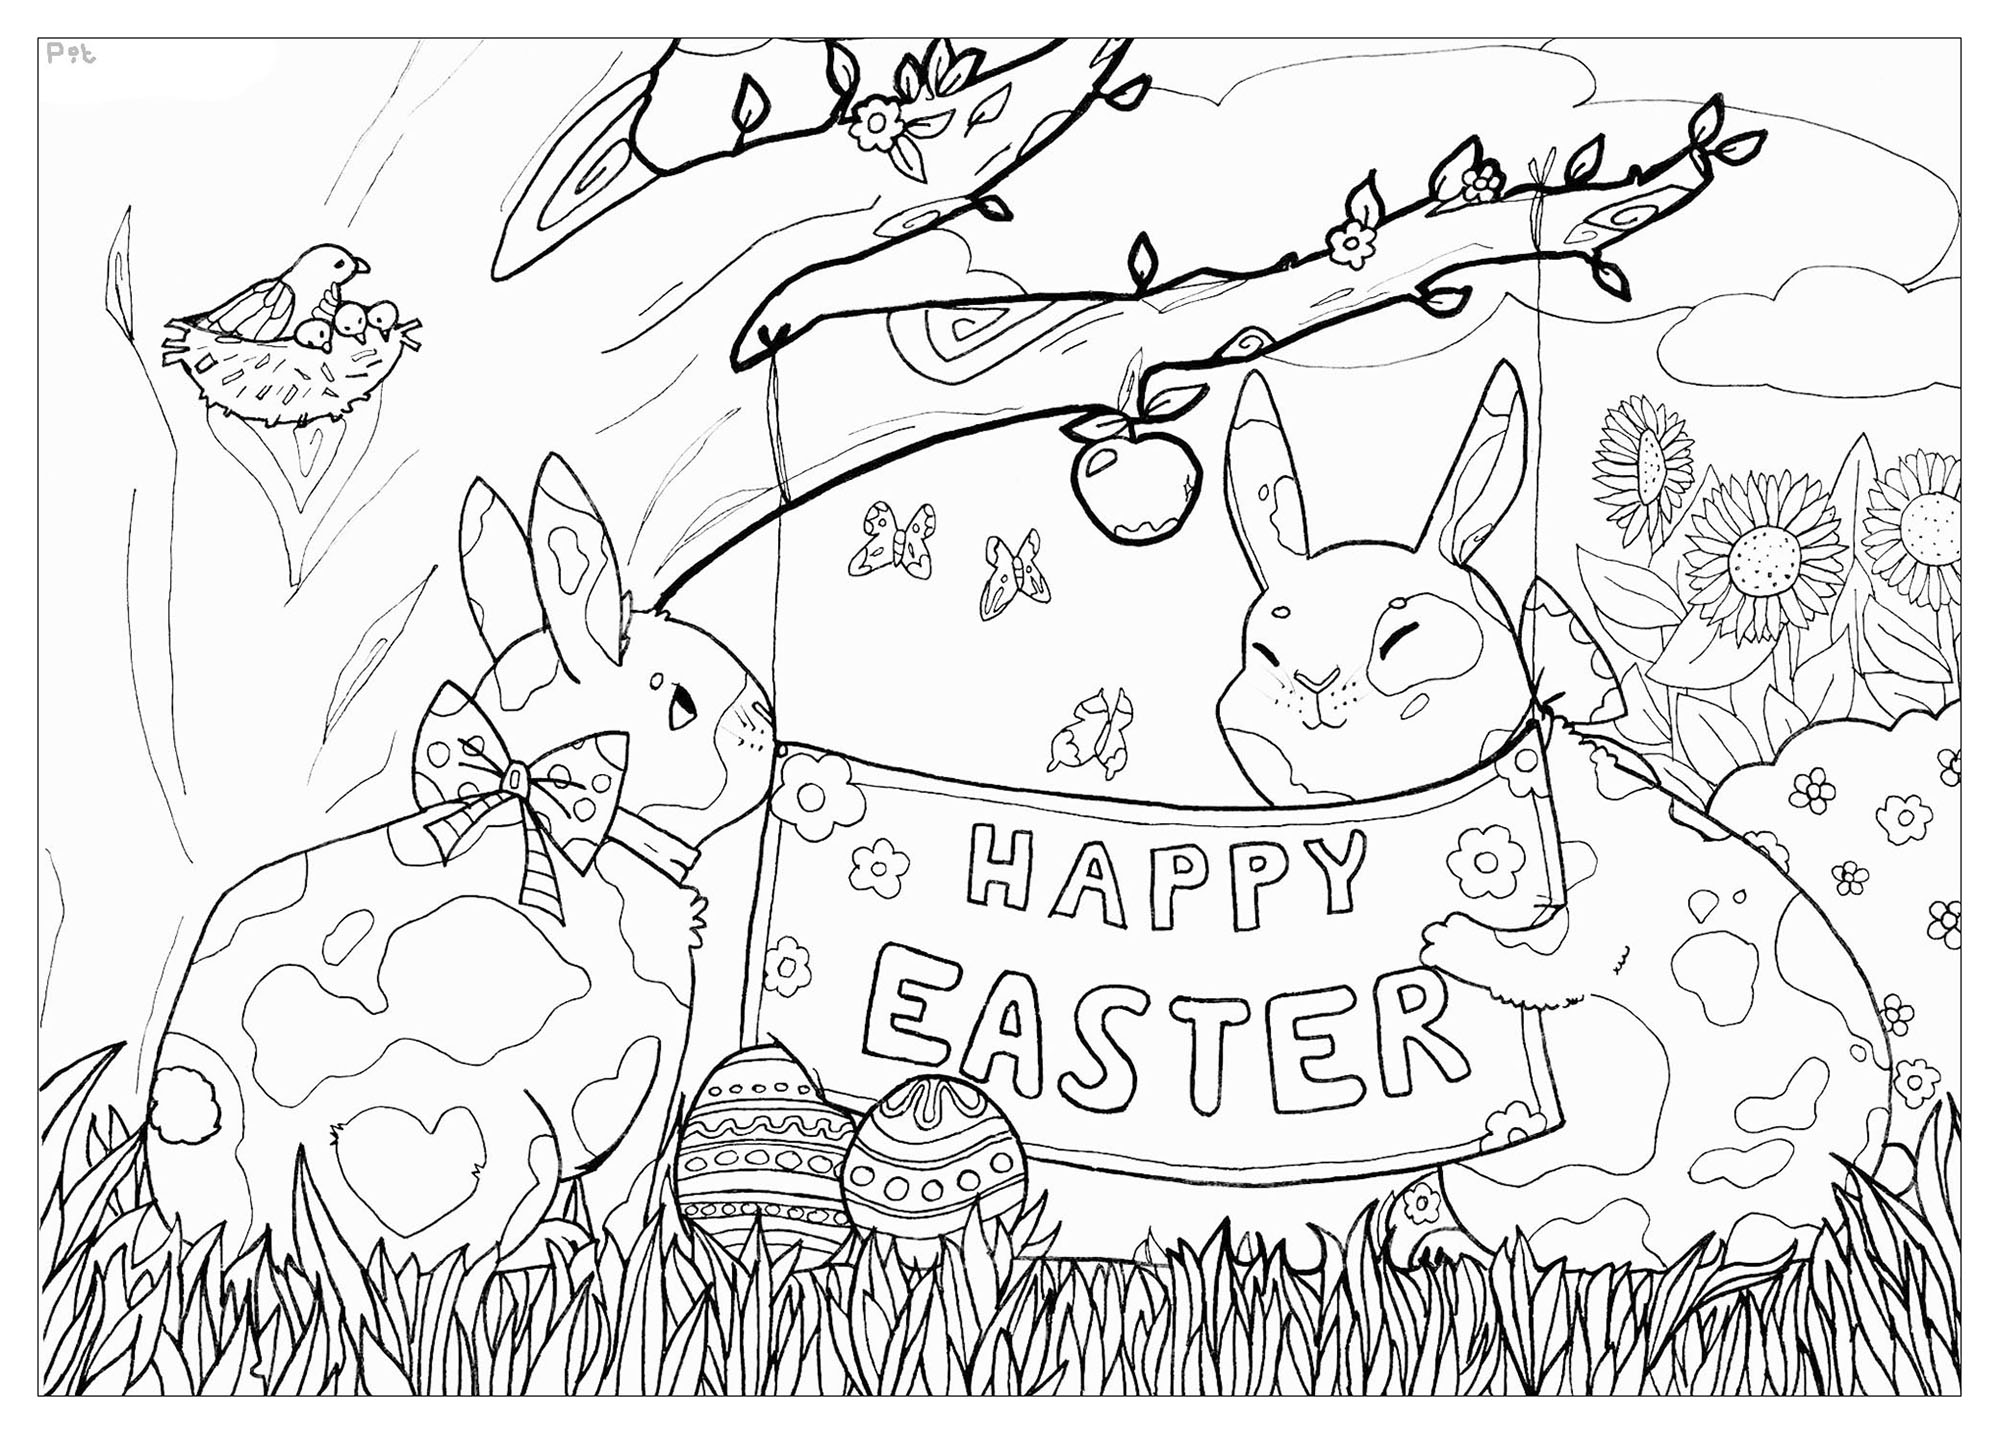 Ces mignons petit lapins souhaitent fêter Pâques avec vous